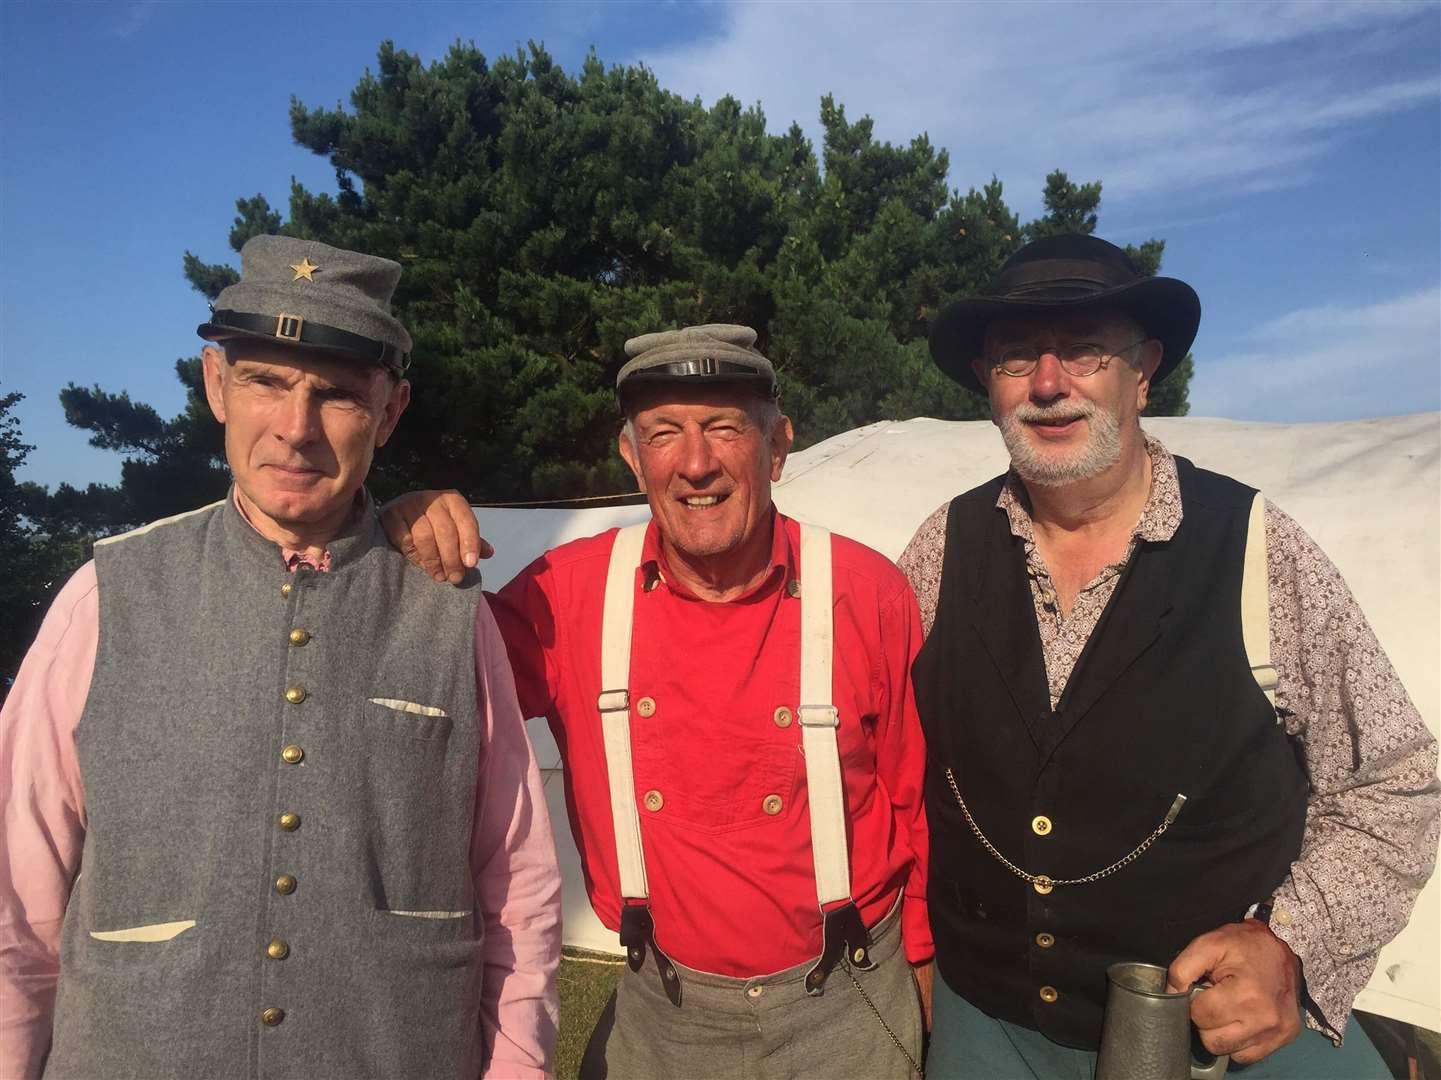 Bob, Derek and Slasher - American Civil War reenactors